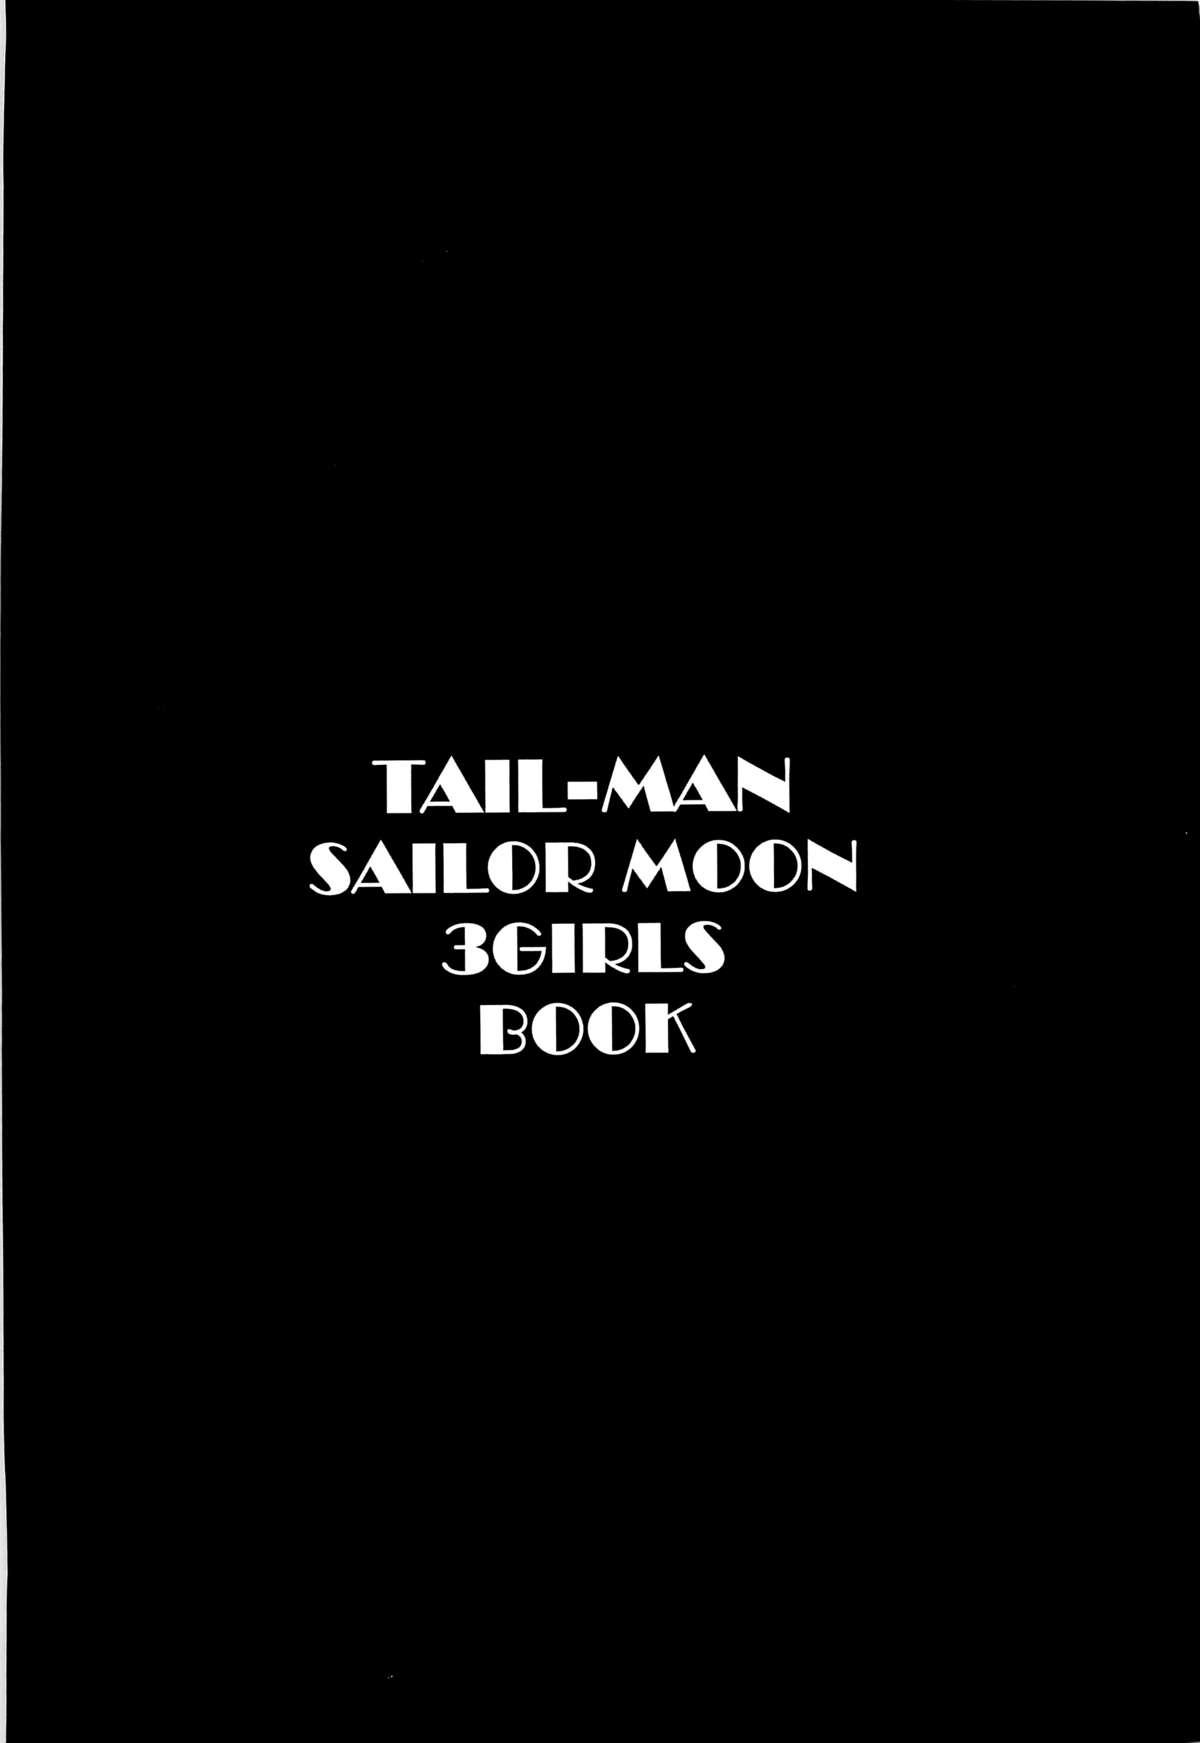 TAIL-MAN SAILORMOON 3GIRLS BOOK 1